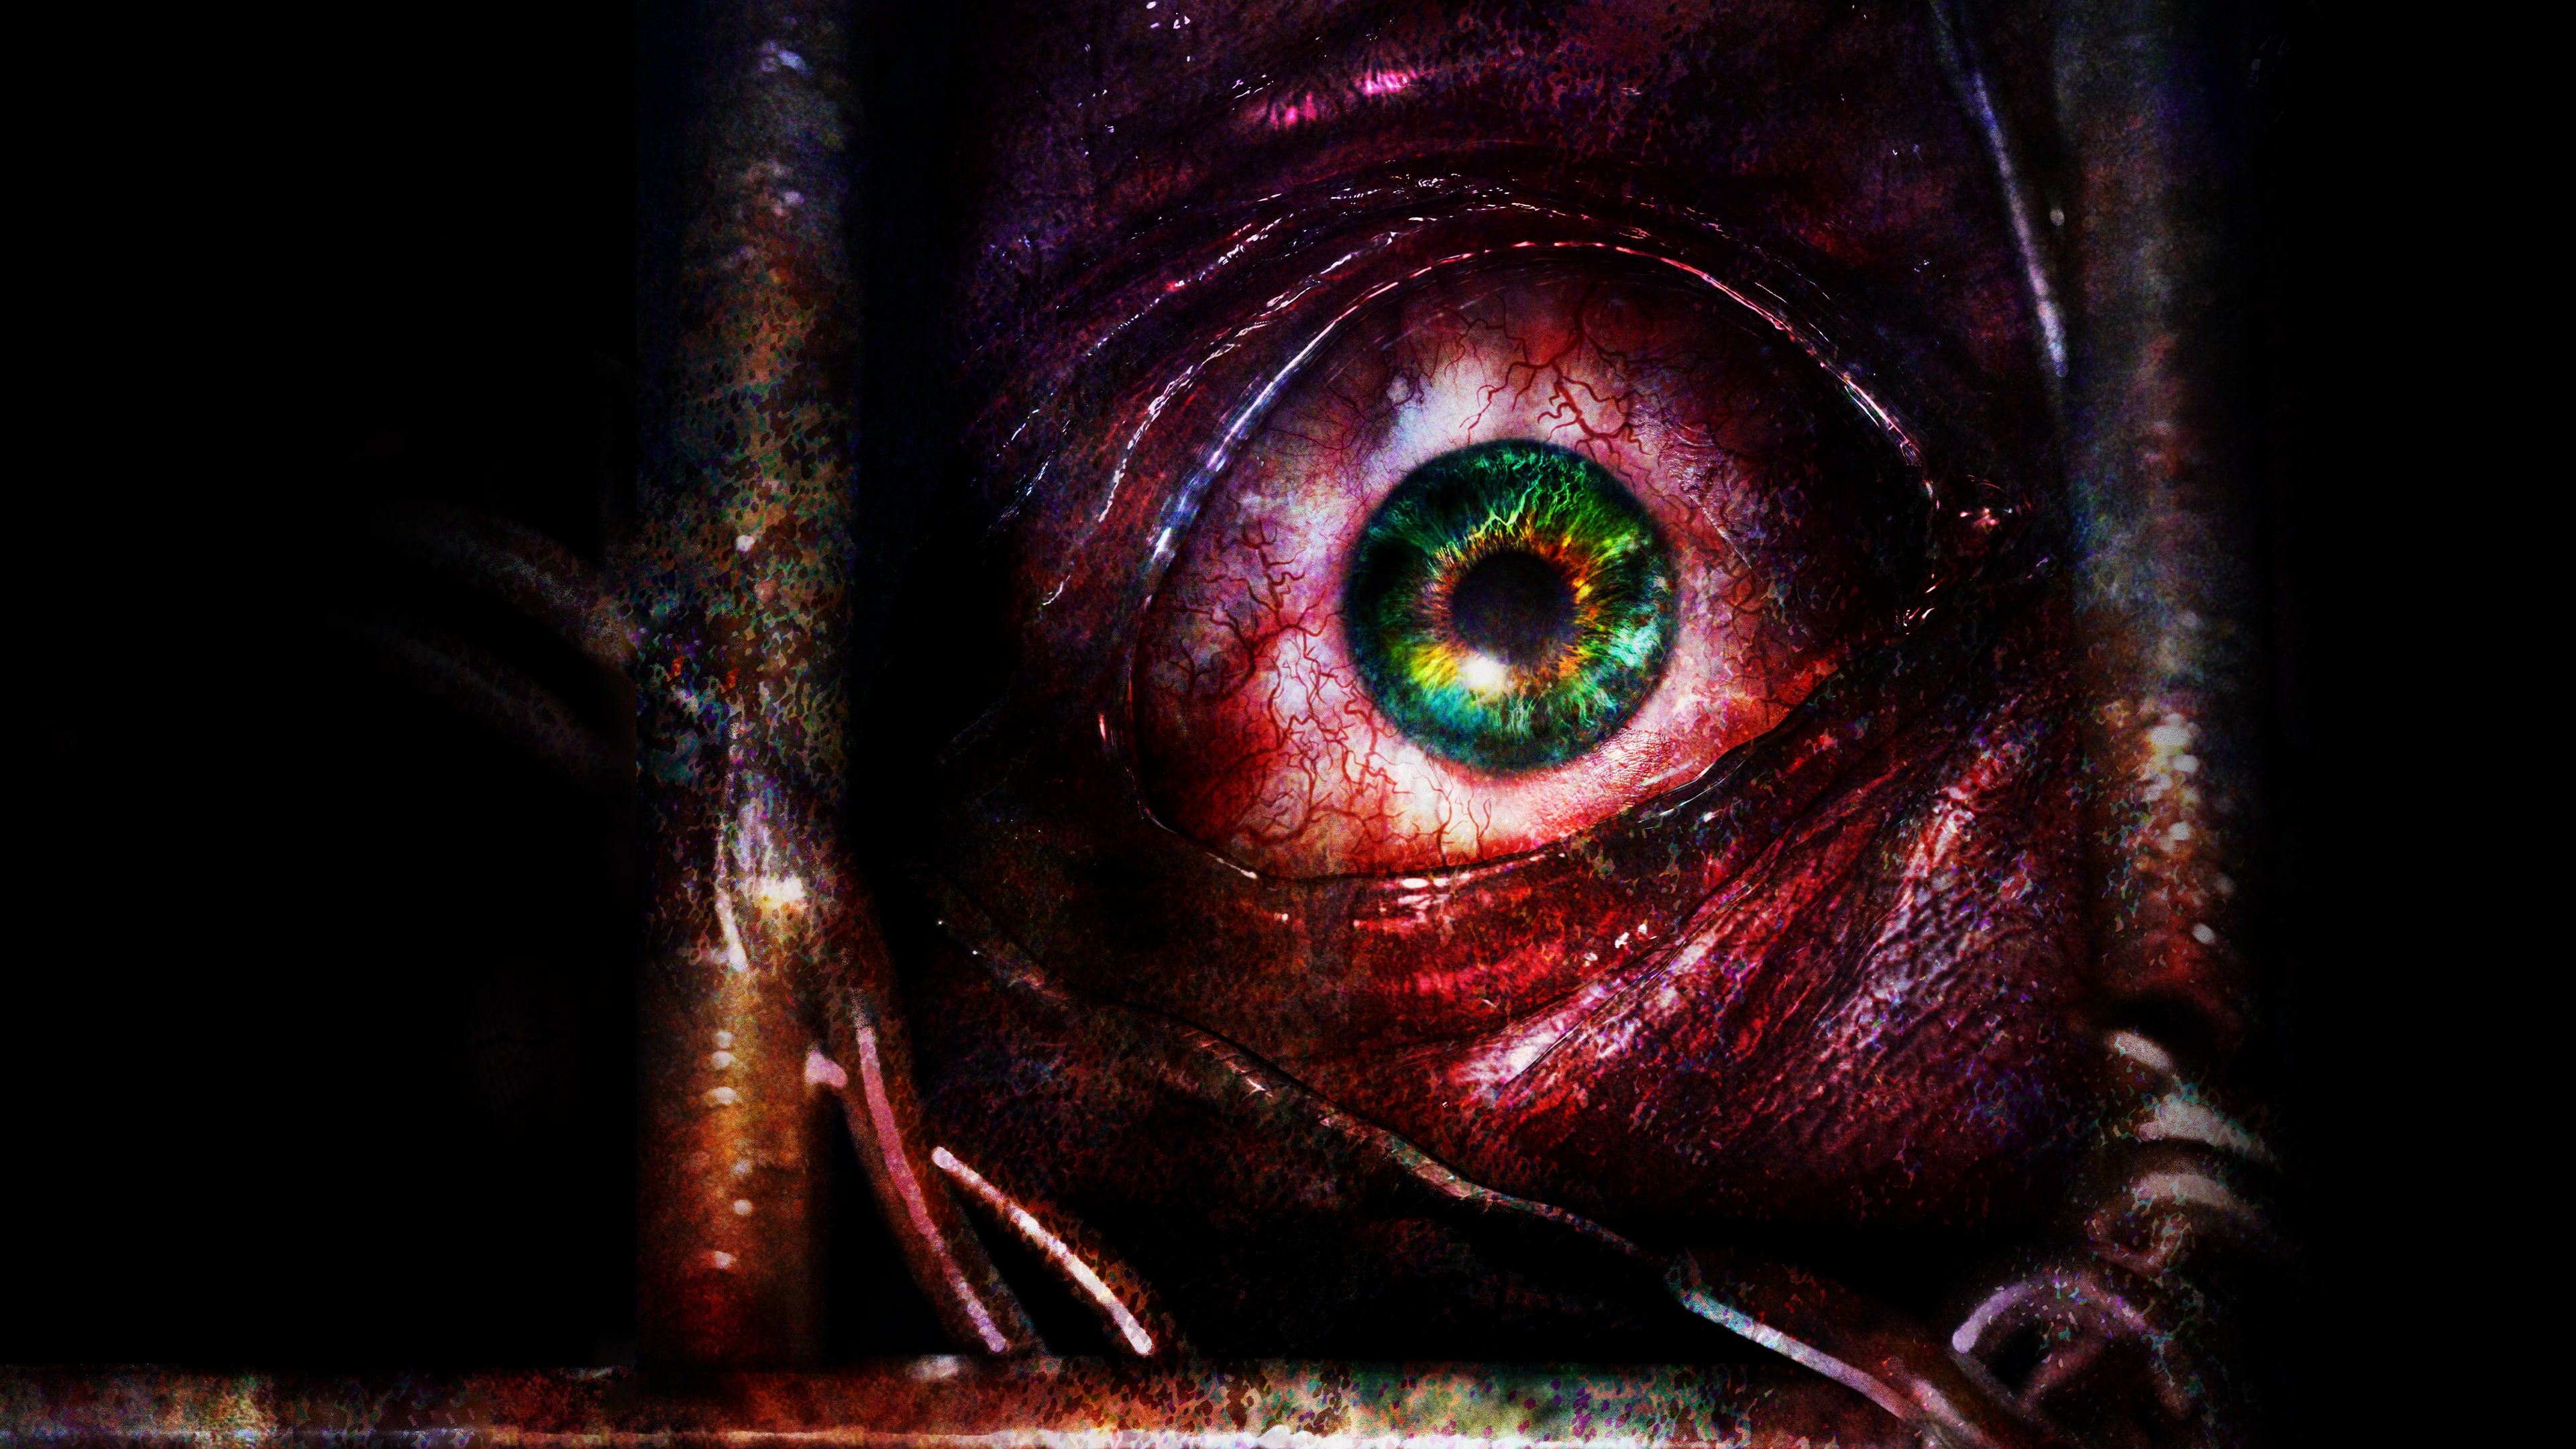 Resident Evil™ Revelations (EP 1: Penal Colony)